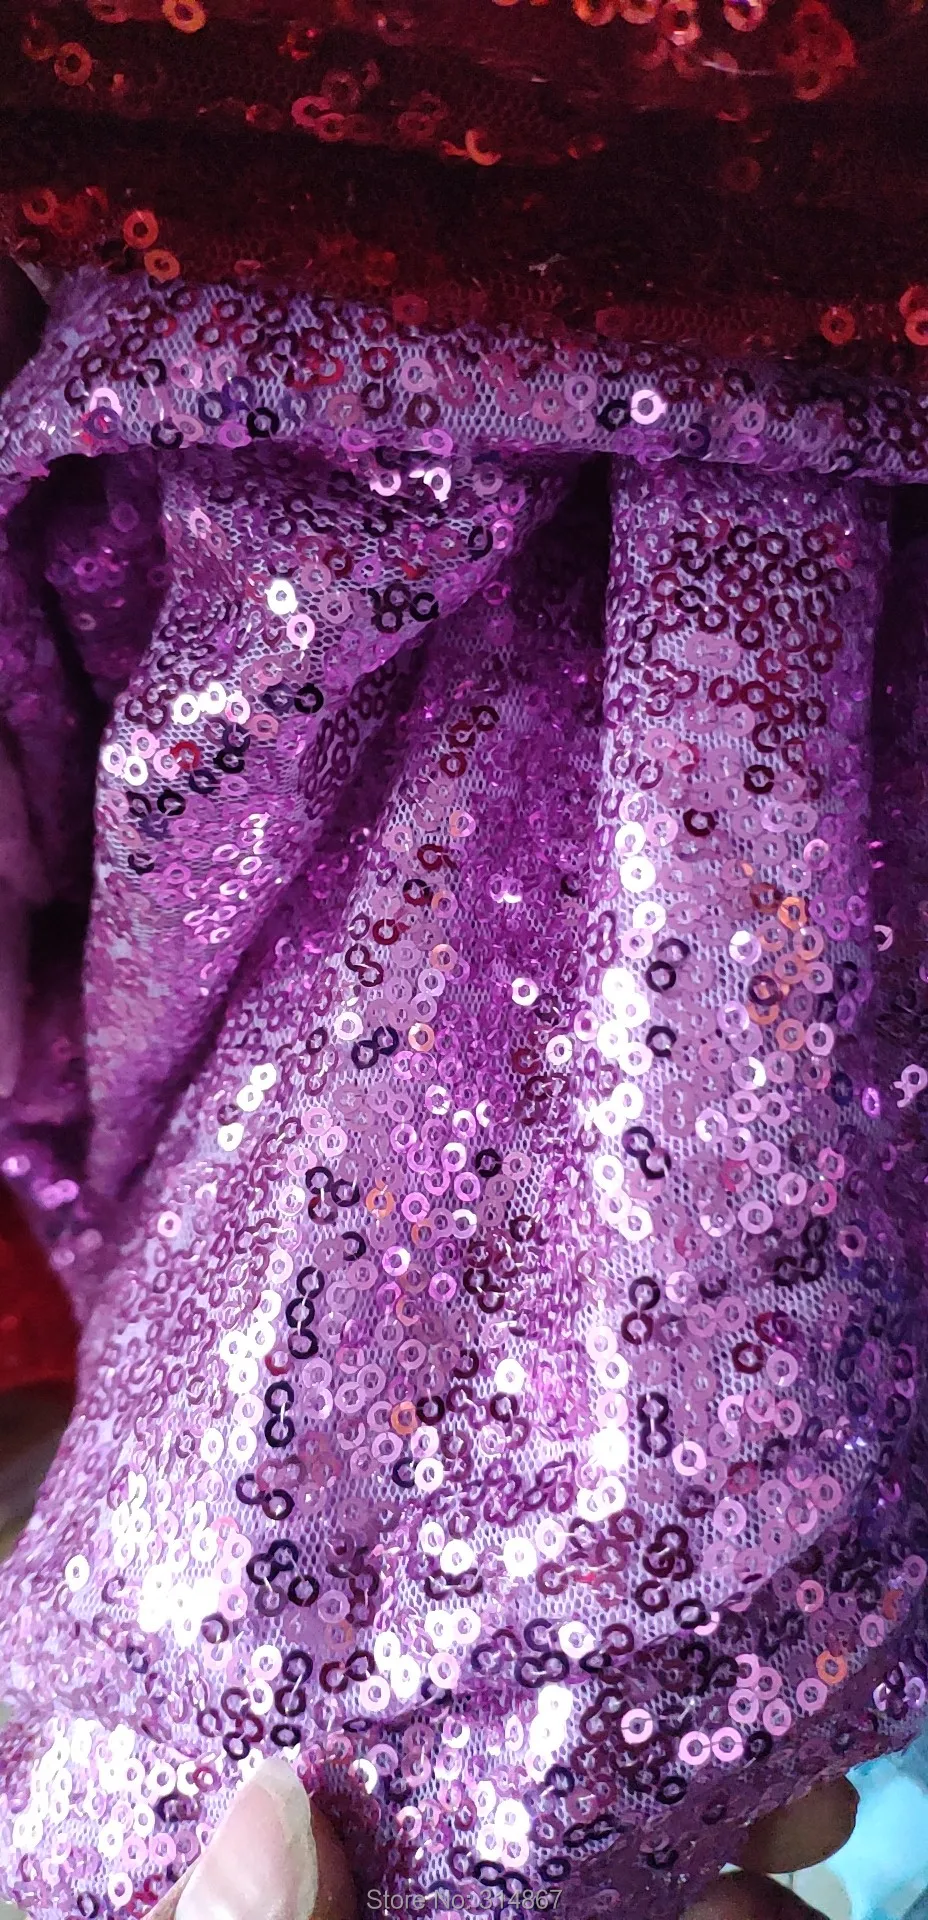 It's Yiya вечернее платье элегантное v-образным вырезом Платье трапециевидного силуэта De Soiree с длинным рукавом длиной до пола с блестками женские вечерние платья E825 - Цвет: purple